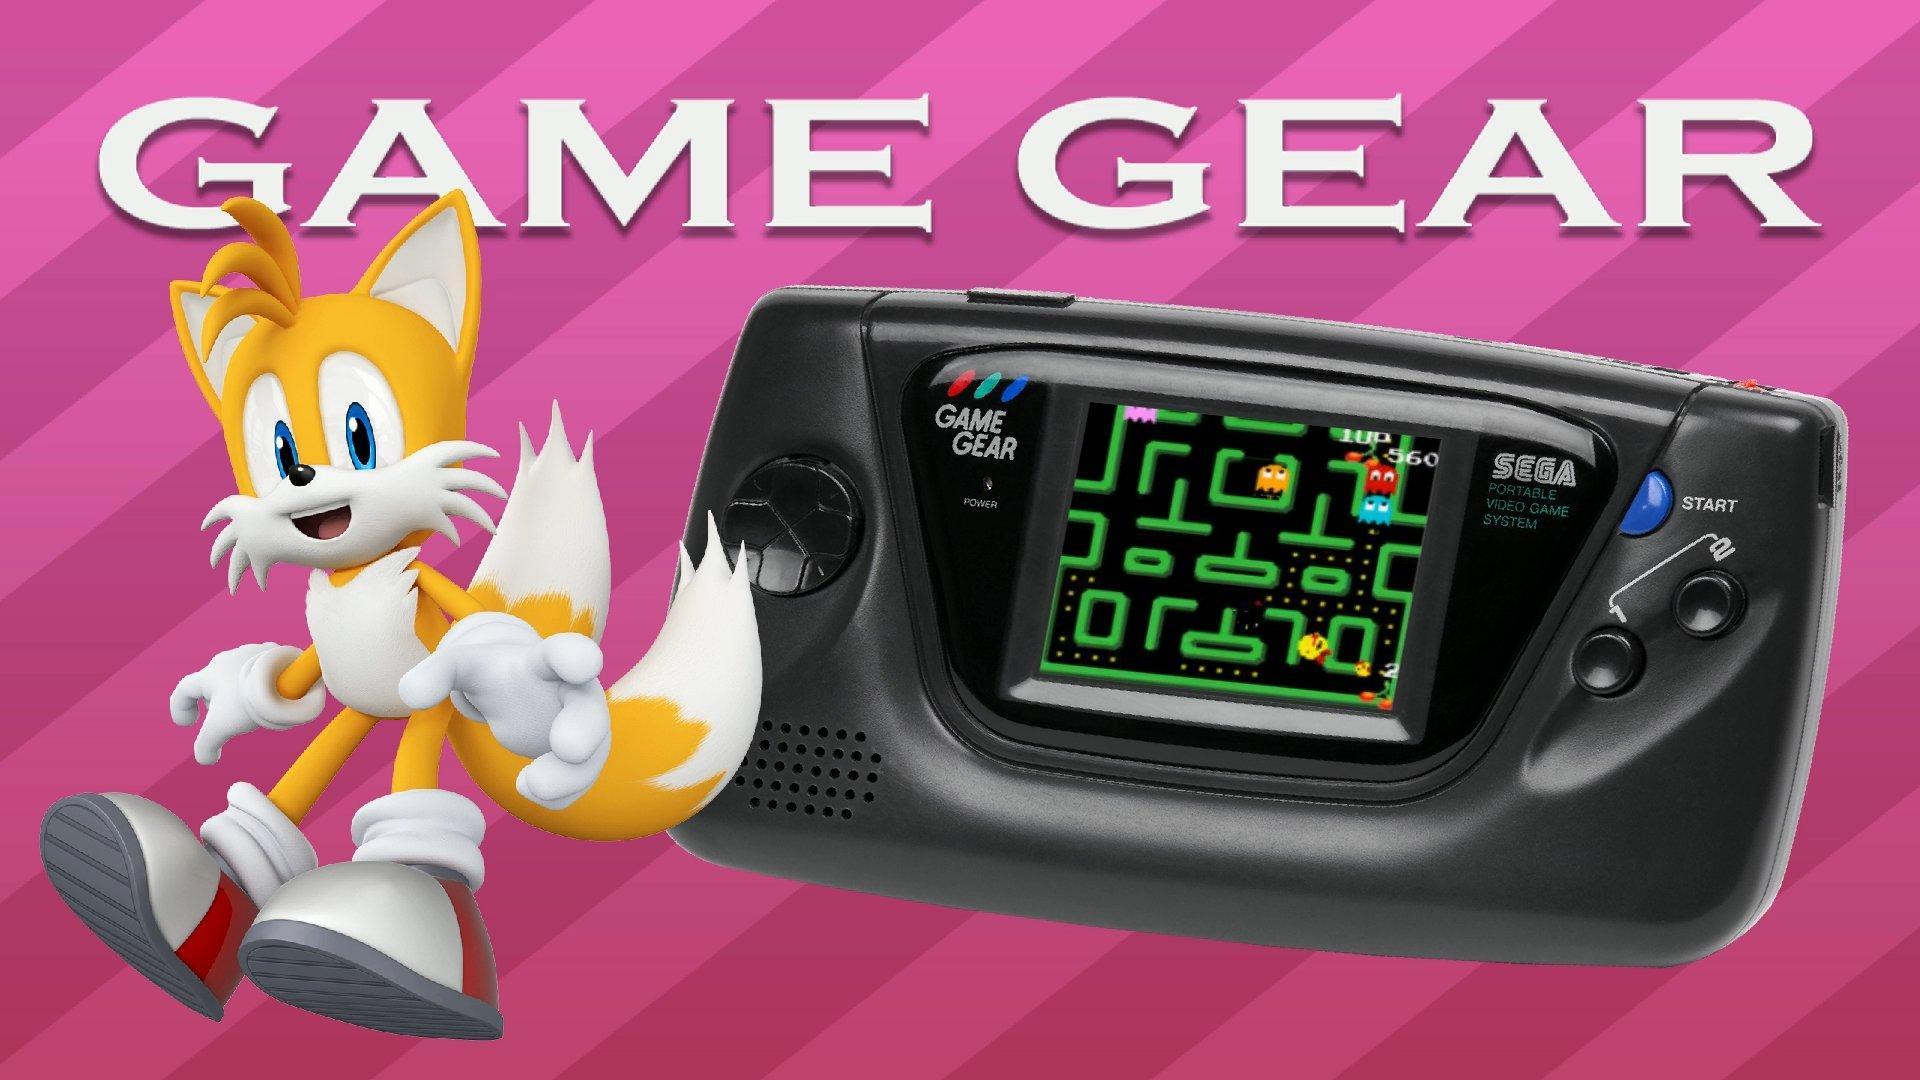 Nelson Pereira - Sega Game Gear (Micro Console)